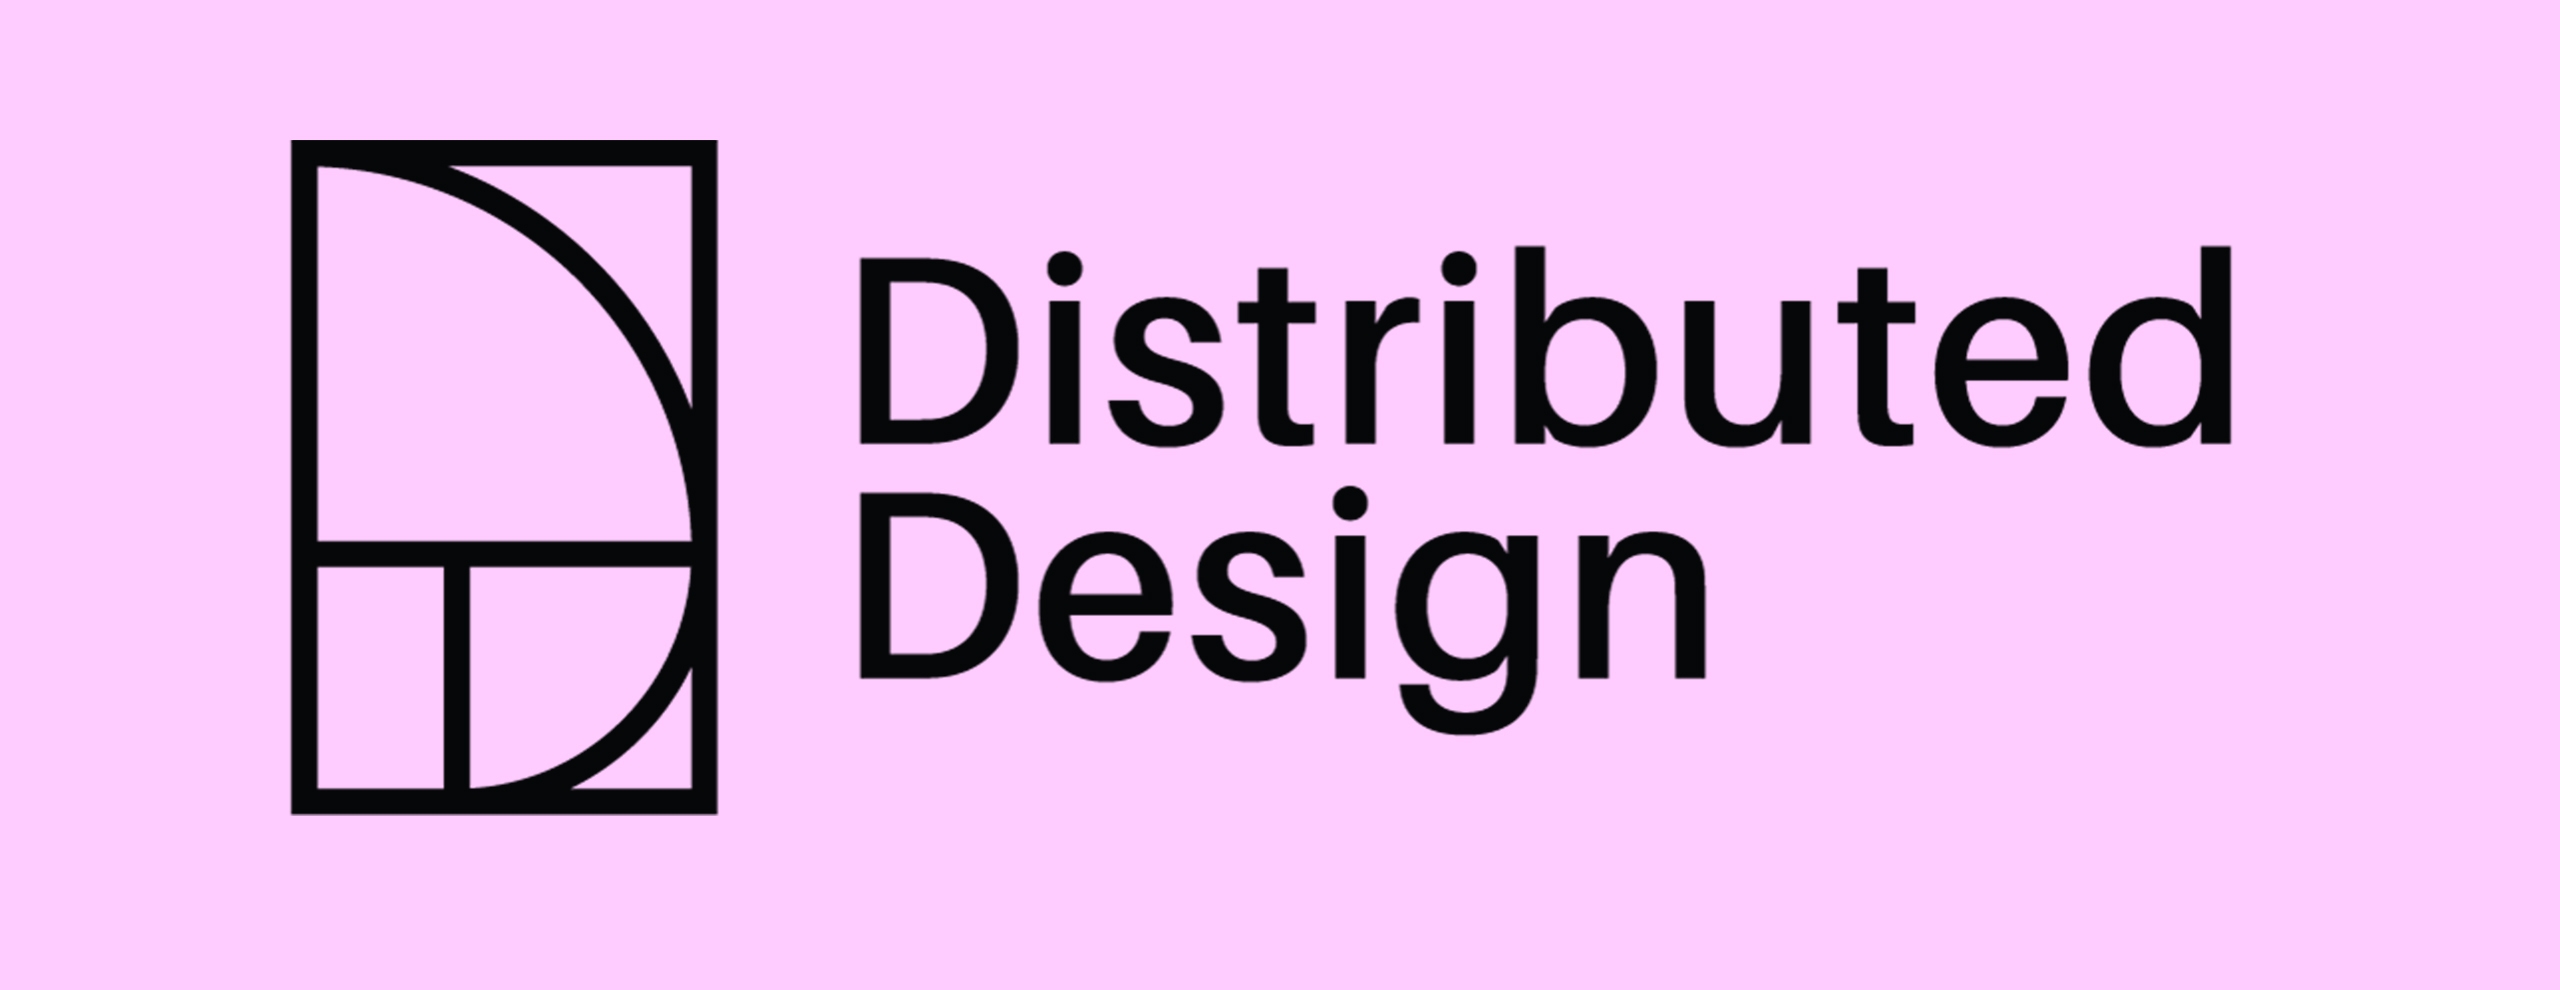 Distributed Design: Un enfoque del diseño para los nuevos tiempos